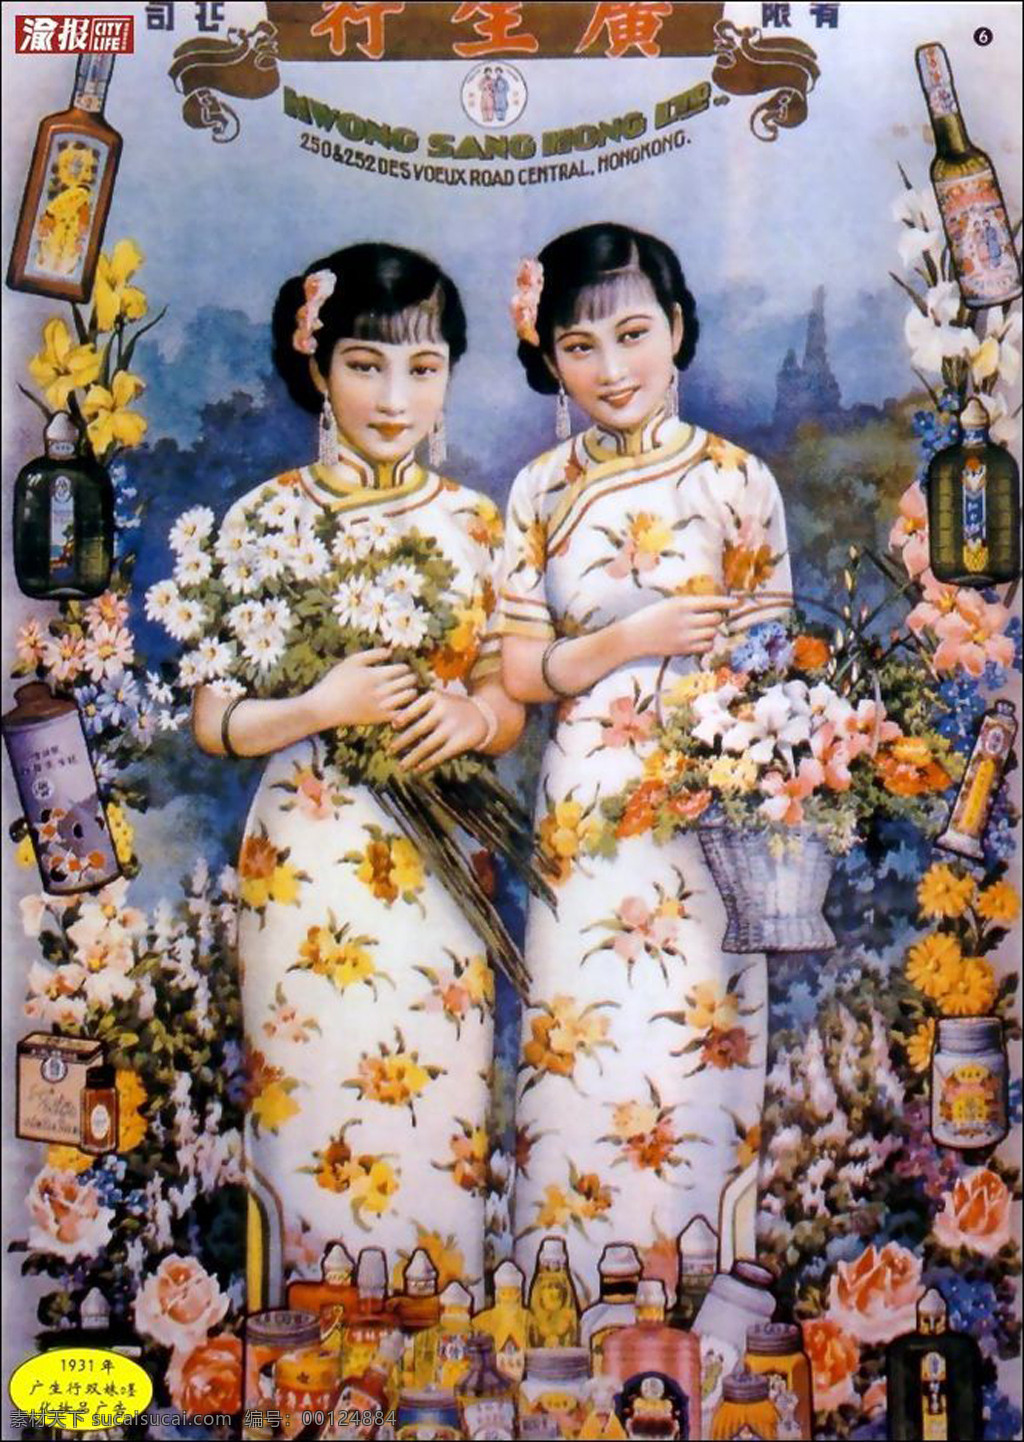 老上海 海报 老上海海报 老海报 老上海美女 美女 传统文化 文化艺术